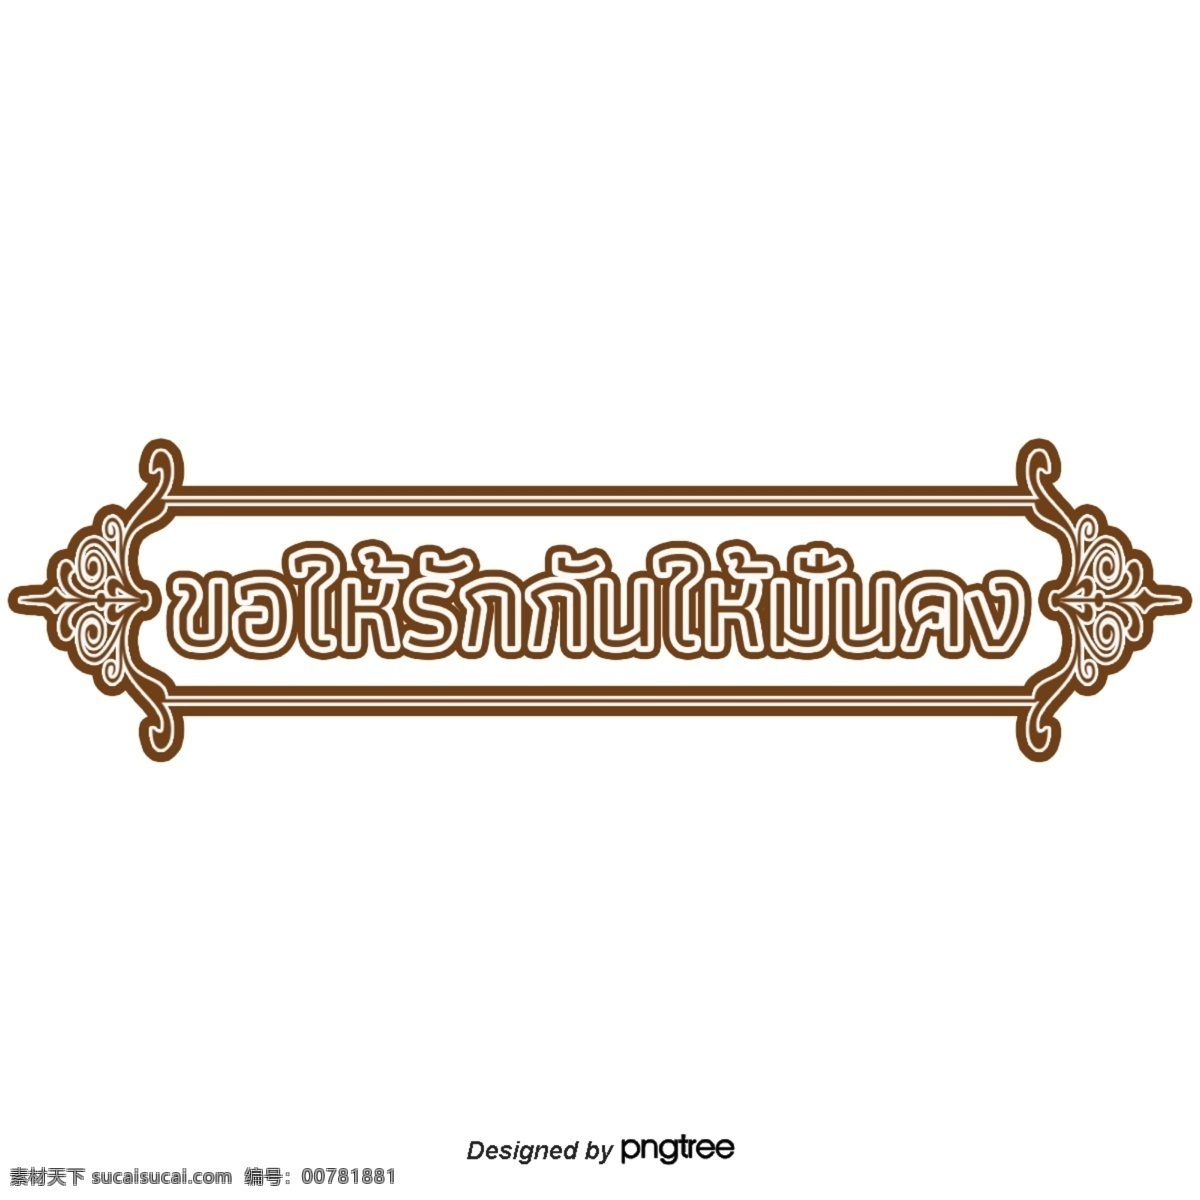 泰国 文字 字体 要求 稳定 相爱 糖 矩形